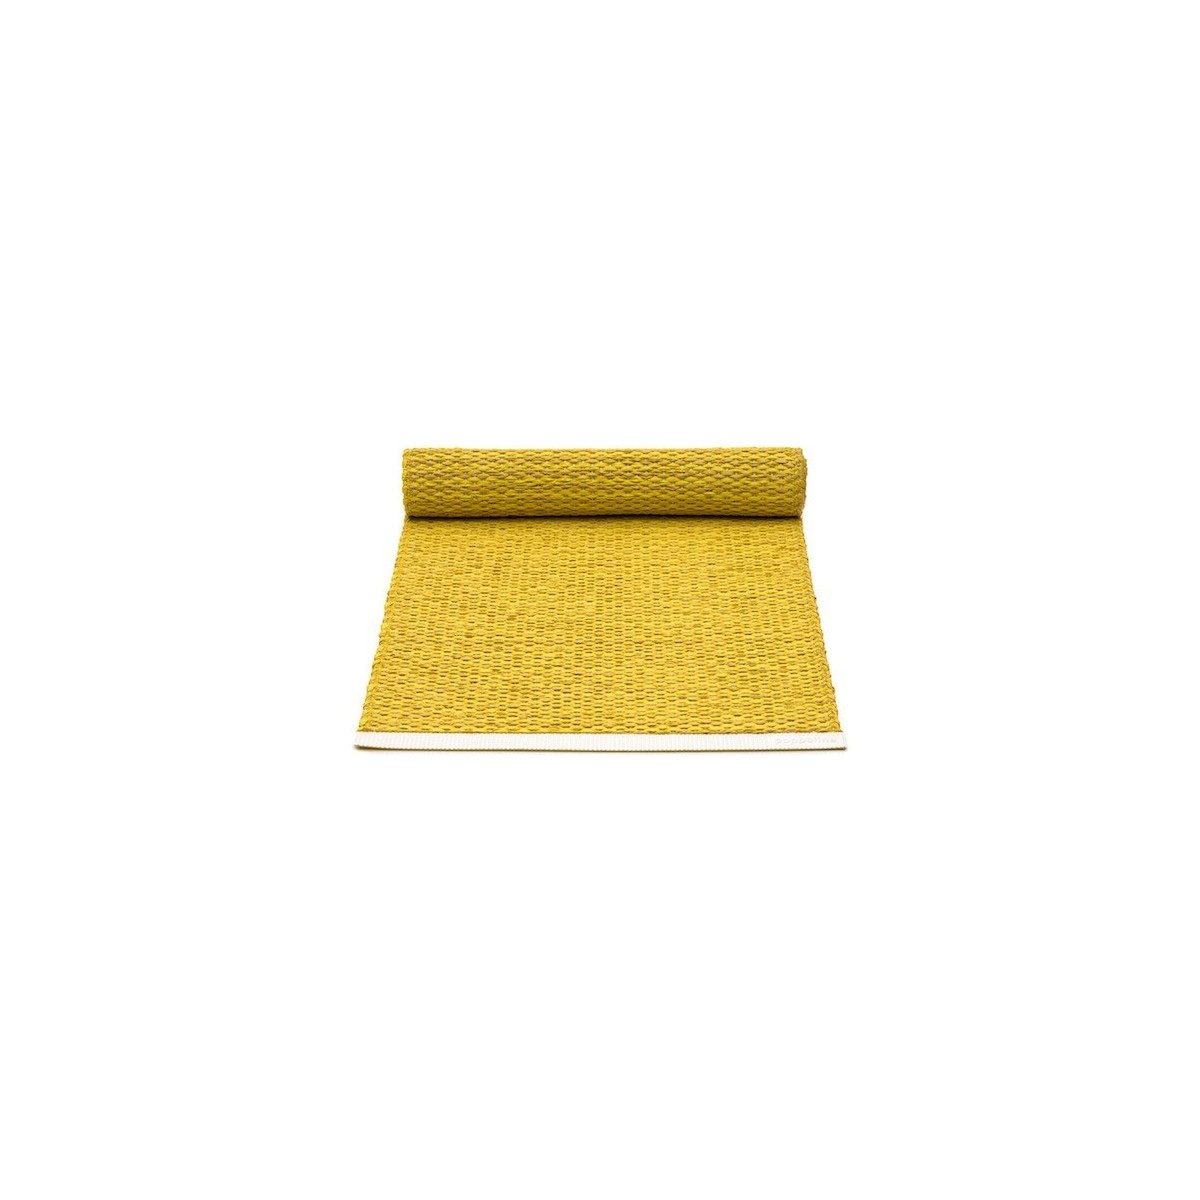 36x60cm - mustard / lemon - Mono table runner